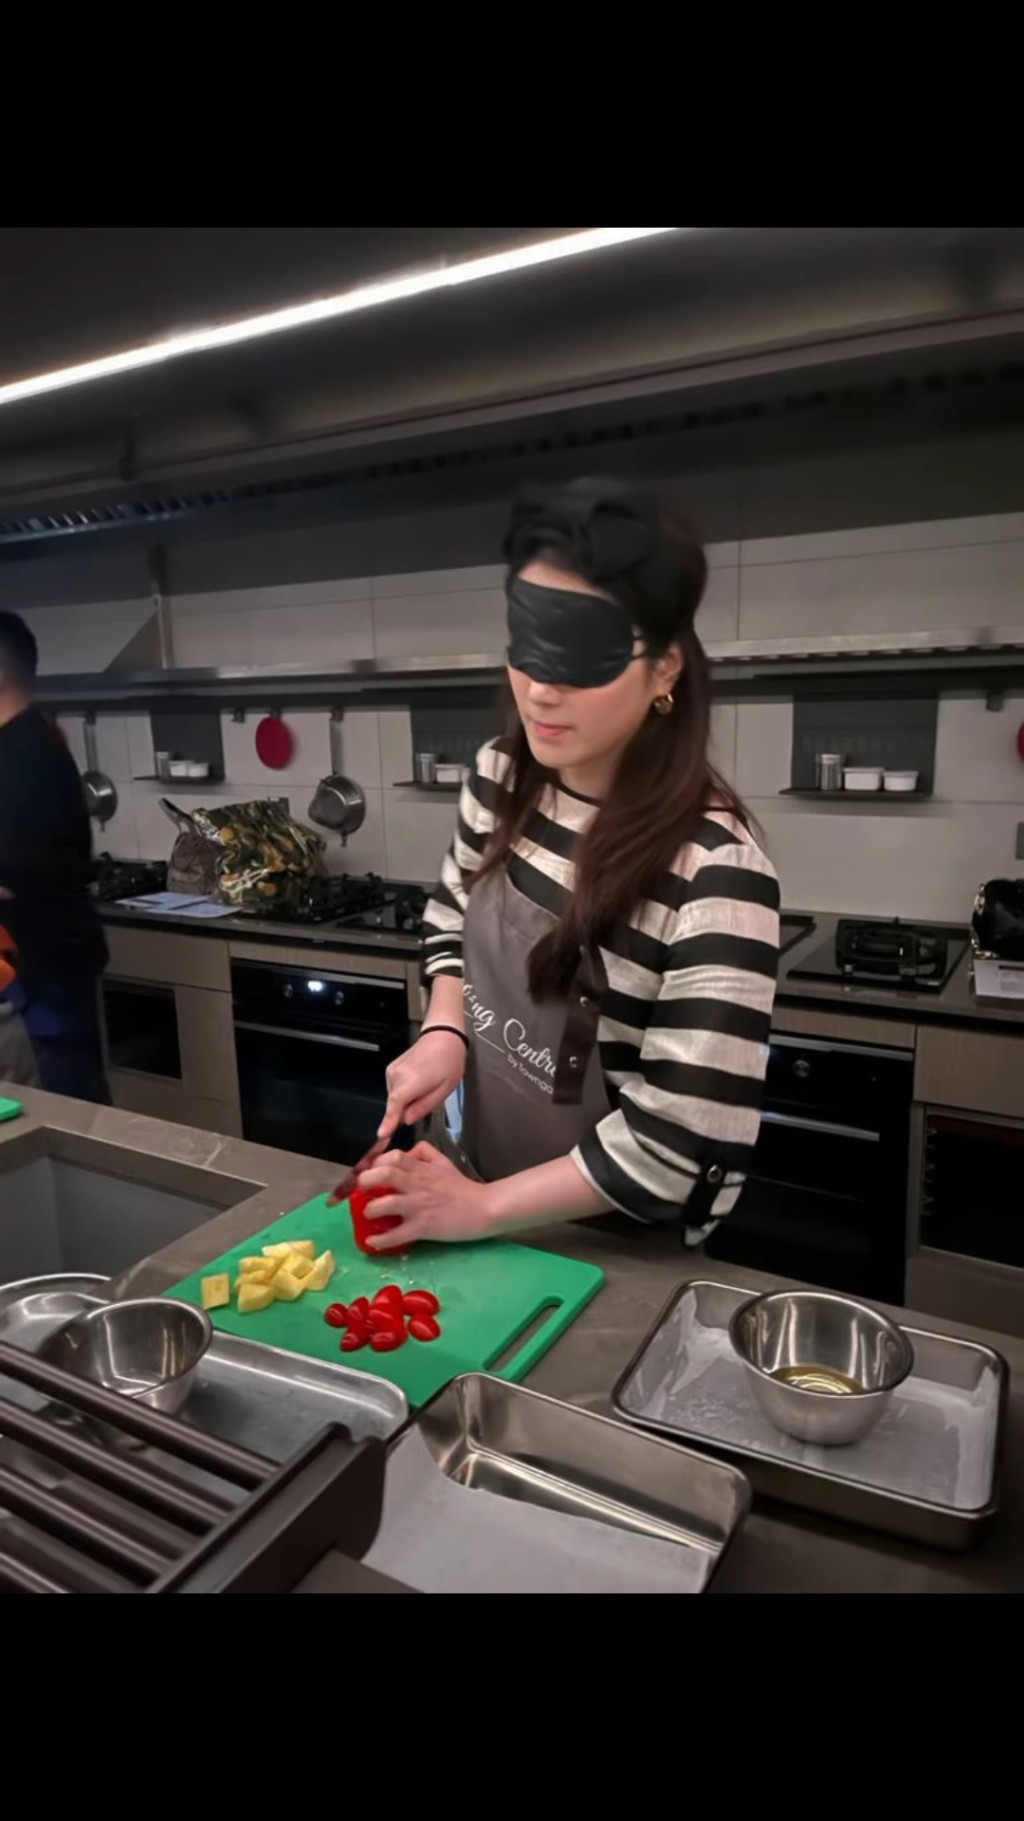 苟芸慧出席《暗中烘焙》活动，体脸视障人士如何煮食。